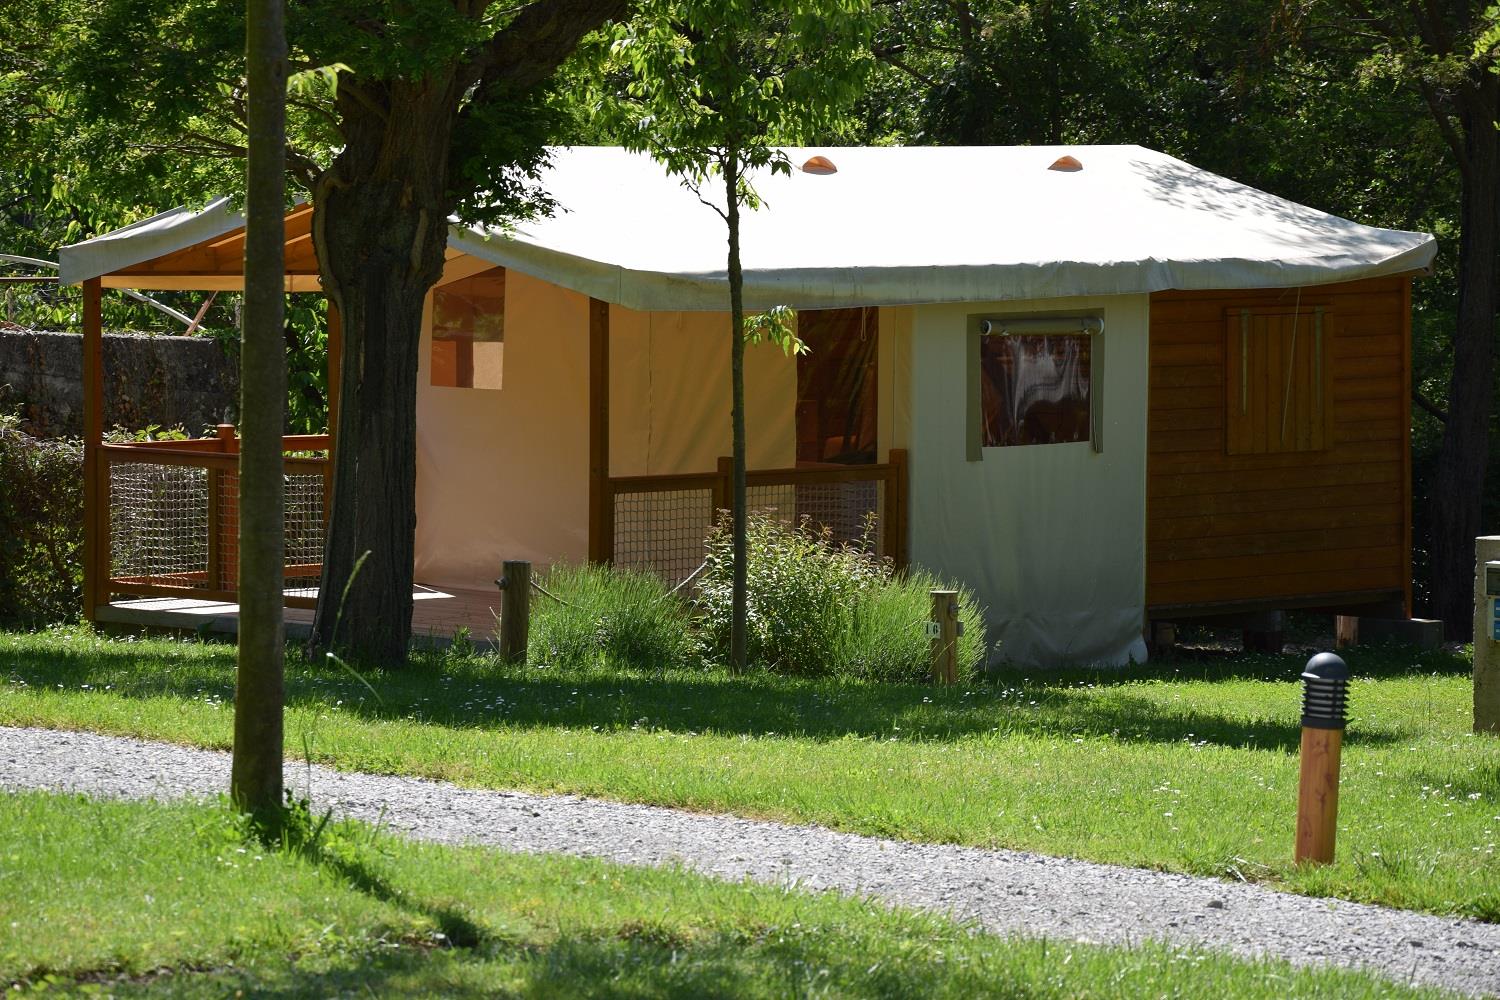 Huuraccommodatie - Ingerichte Huurtent Ecolodge Sahari 19M² Zonder Sanitair - Camping la Charderie